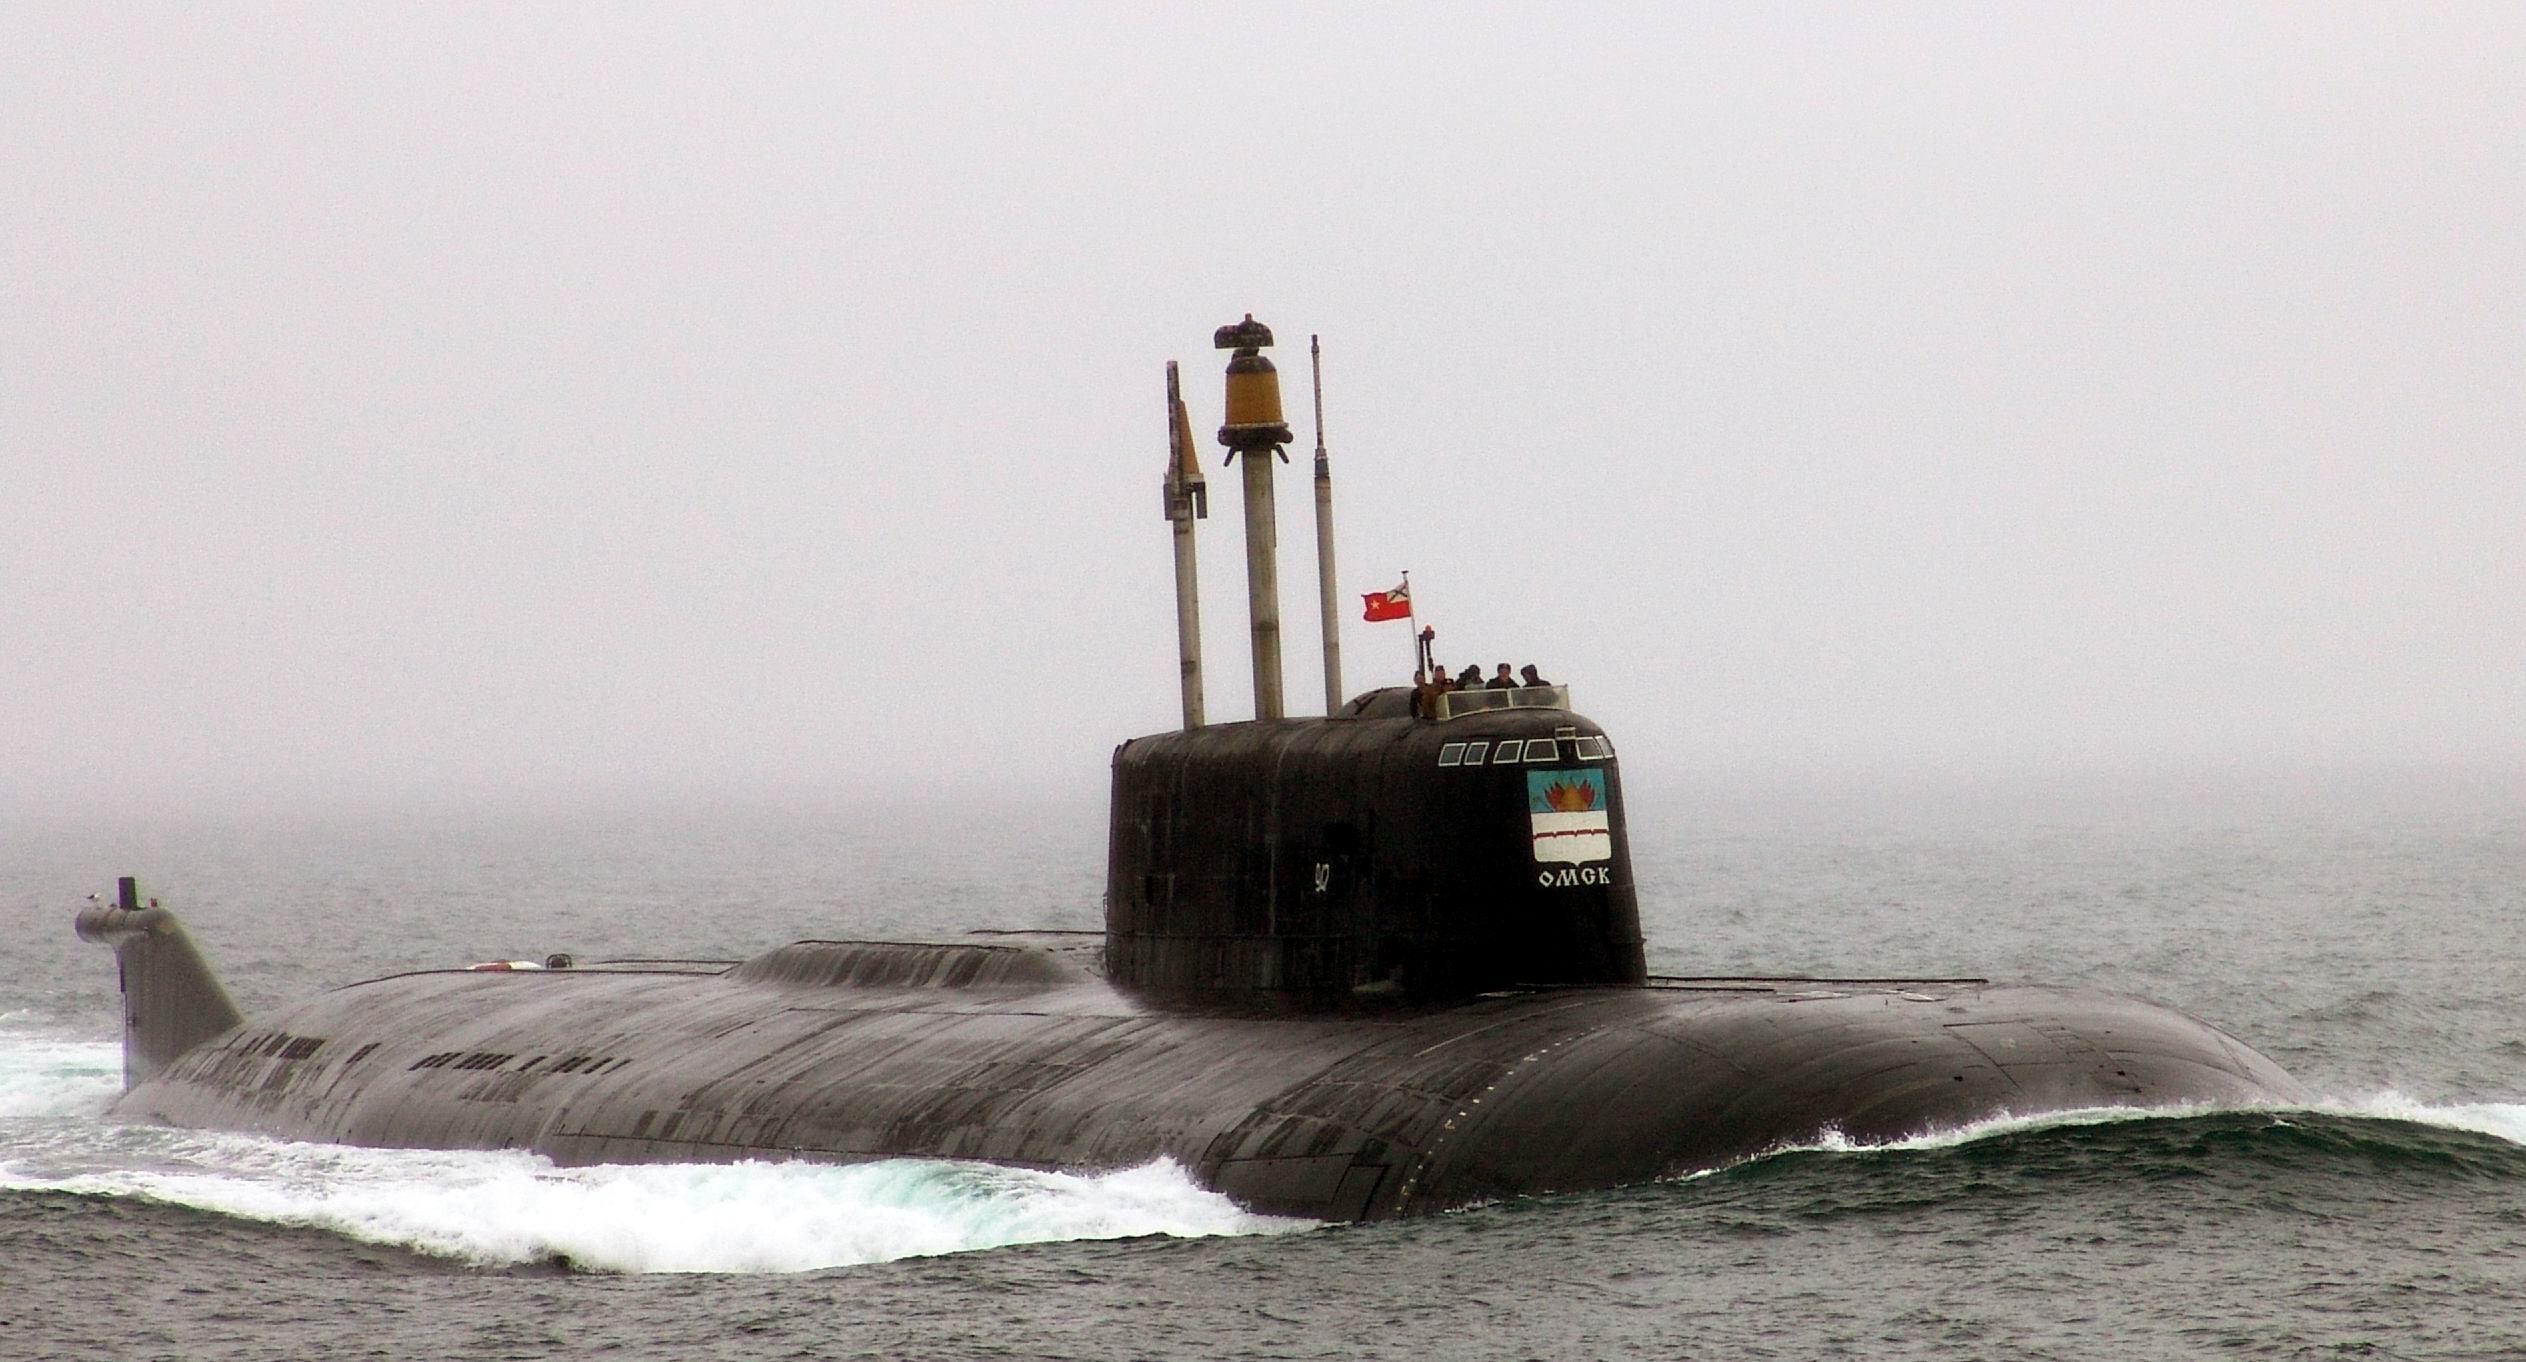 Подводная лодка тихоокеанского флота. Подводные лодки проекта 949а «Антей». Атомная подводная лодка к-186 «Омск». Подводная лодка Омск проекта 949а. Атомный подводный крейсер к-186 "Омск".